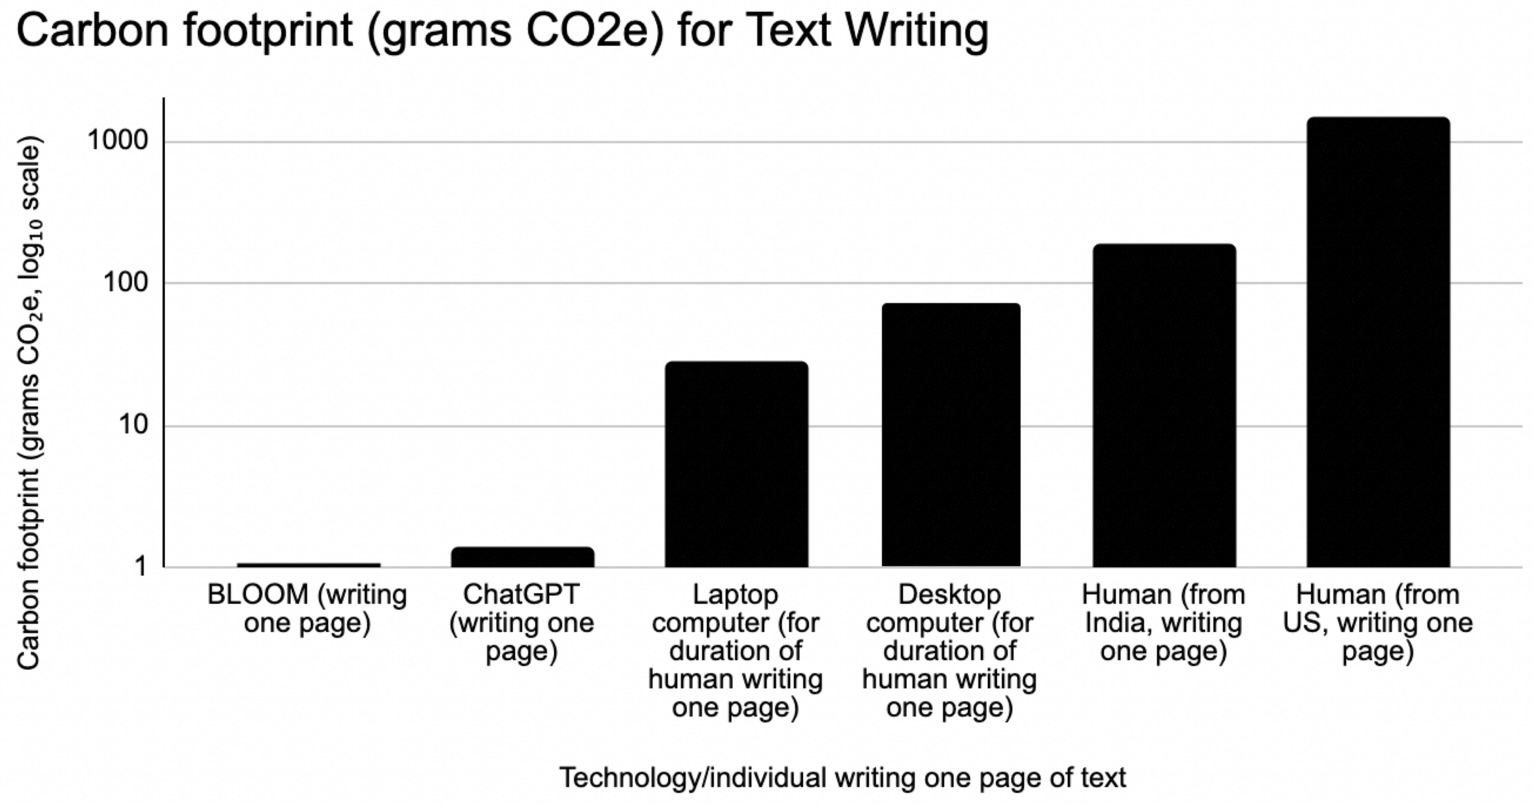 A notre grande surprise, le journal Nature a trouvé que l’IA consommait moins que les humains (ici la production d’une page, mais les résultats sont les mêmes pour les images). Sans doute car les humains mangent, transpirent et jettent des ordures. Les IA ne boivent pas de Coca Cola. (Cette illustration compare les émissions de CO2e de l'IA et des humains chargés de rédiger une page de texte. L'IA (via BLOOM ou ChatGPT) produit 130 à 1500 fois moins de CO2e par page qu'un auteur humain. L'IA produit également beaucoup moins de CO2e que l'utilisation de l'ordinateur pour aider les humains à écrire.